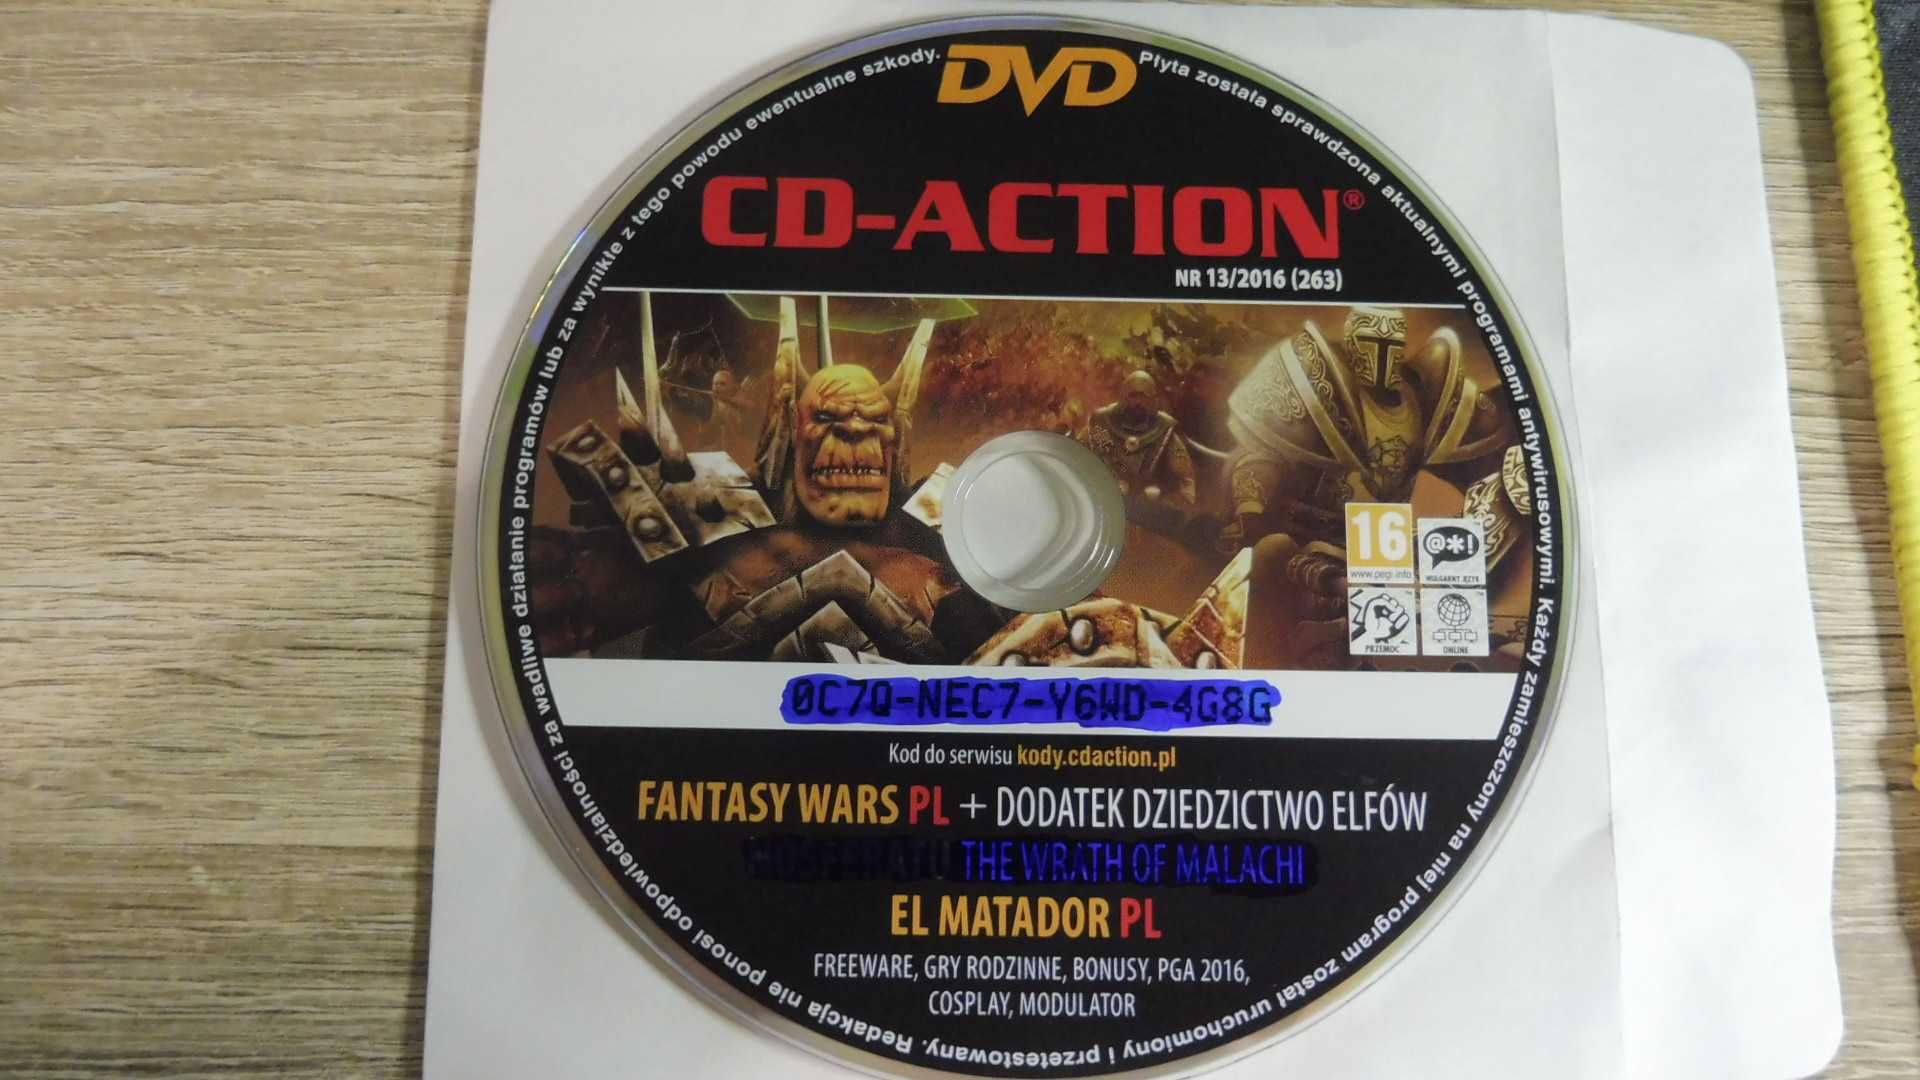 CD Action 13/2016 (263) - Fantasy Wars + Dodatek PL, El Matador PL